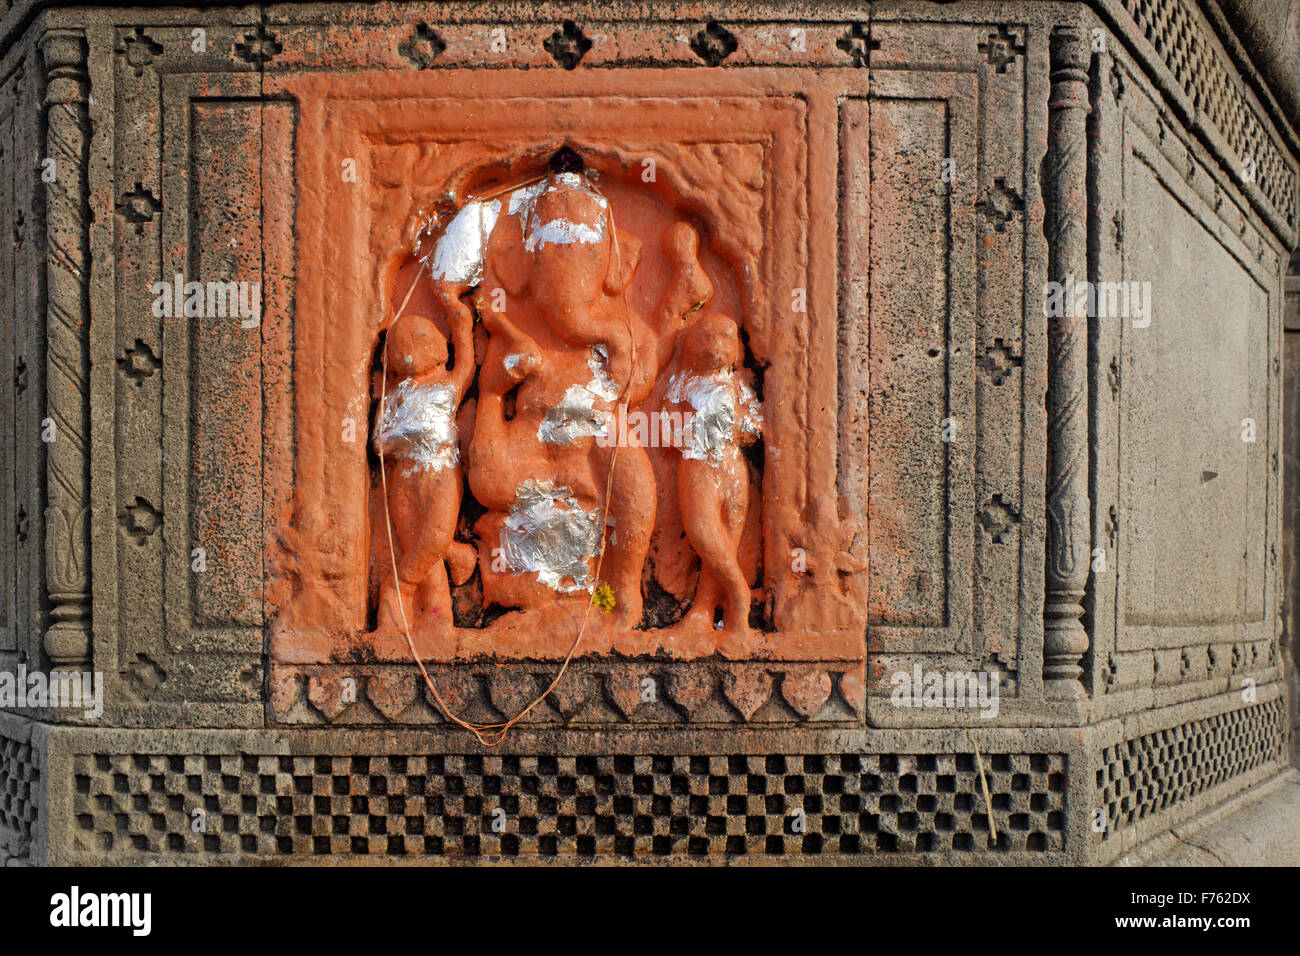 Ganesh statue, maheshwar ghat, khargone, madhya pradesh, india, asia Stock Photo